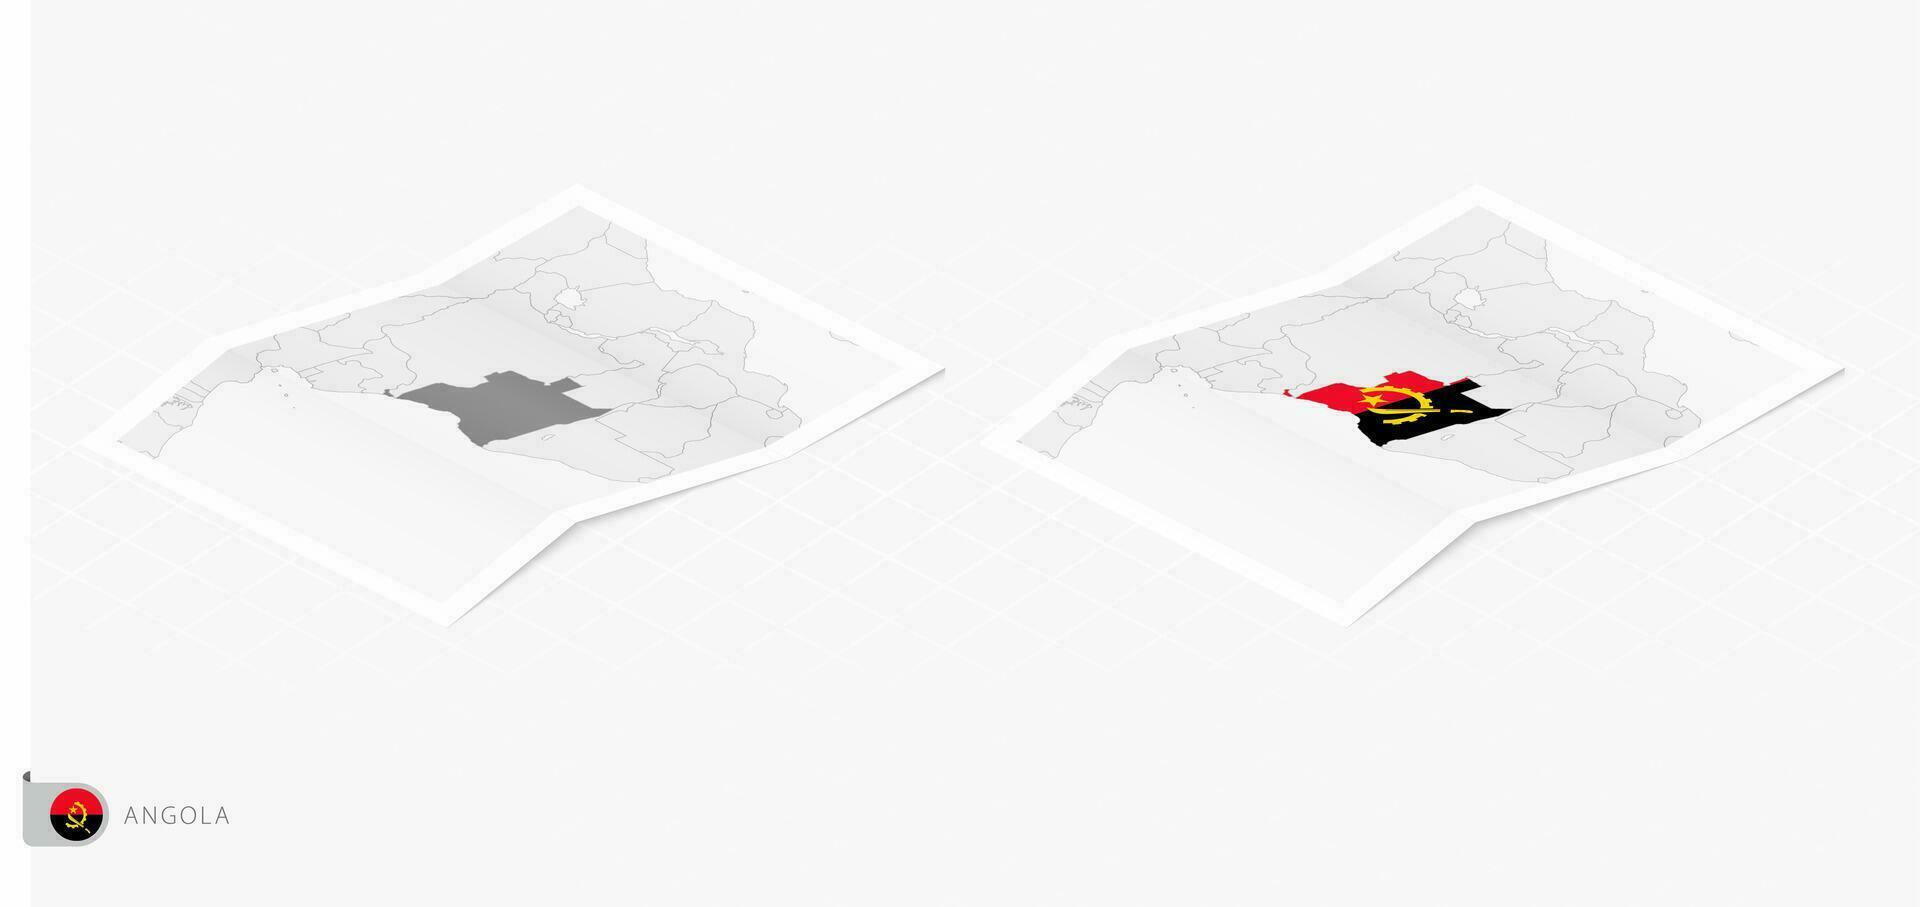 ensemble de deux réaliste carte de angola avec ombre. le drapeau et carte de angola dans isométrique style. vecteur